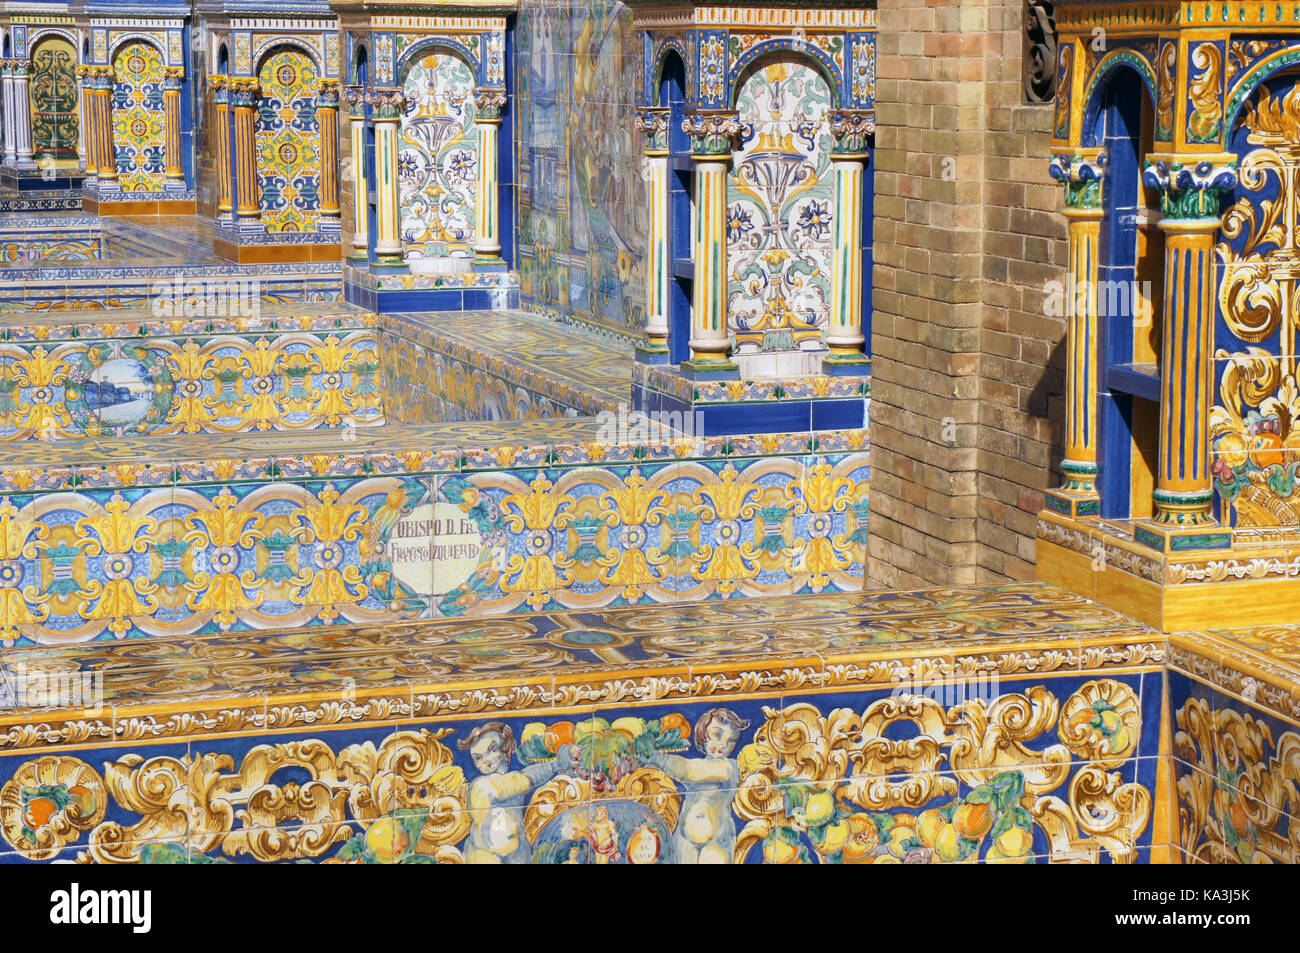 Detalle de mosaico en Plaza de España (Plaza de España) en Sevilla (Sevilla), azulejos azules y amarillos Foto de stock